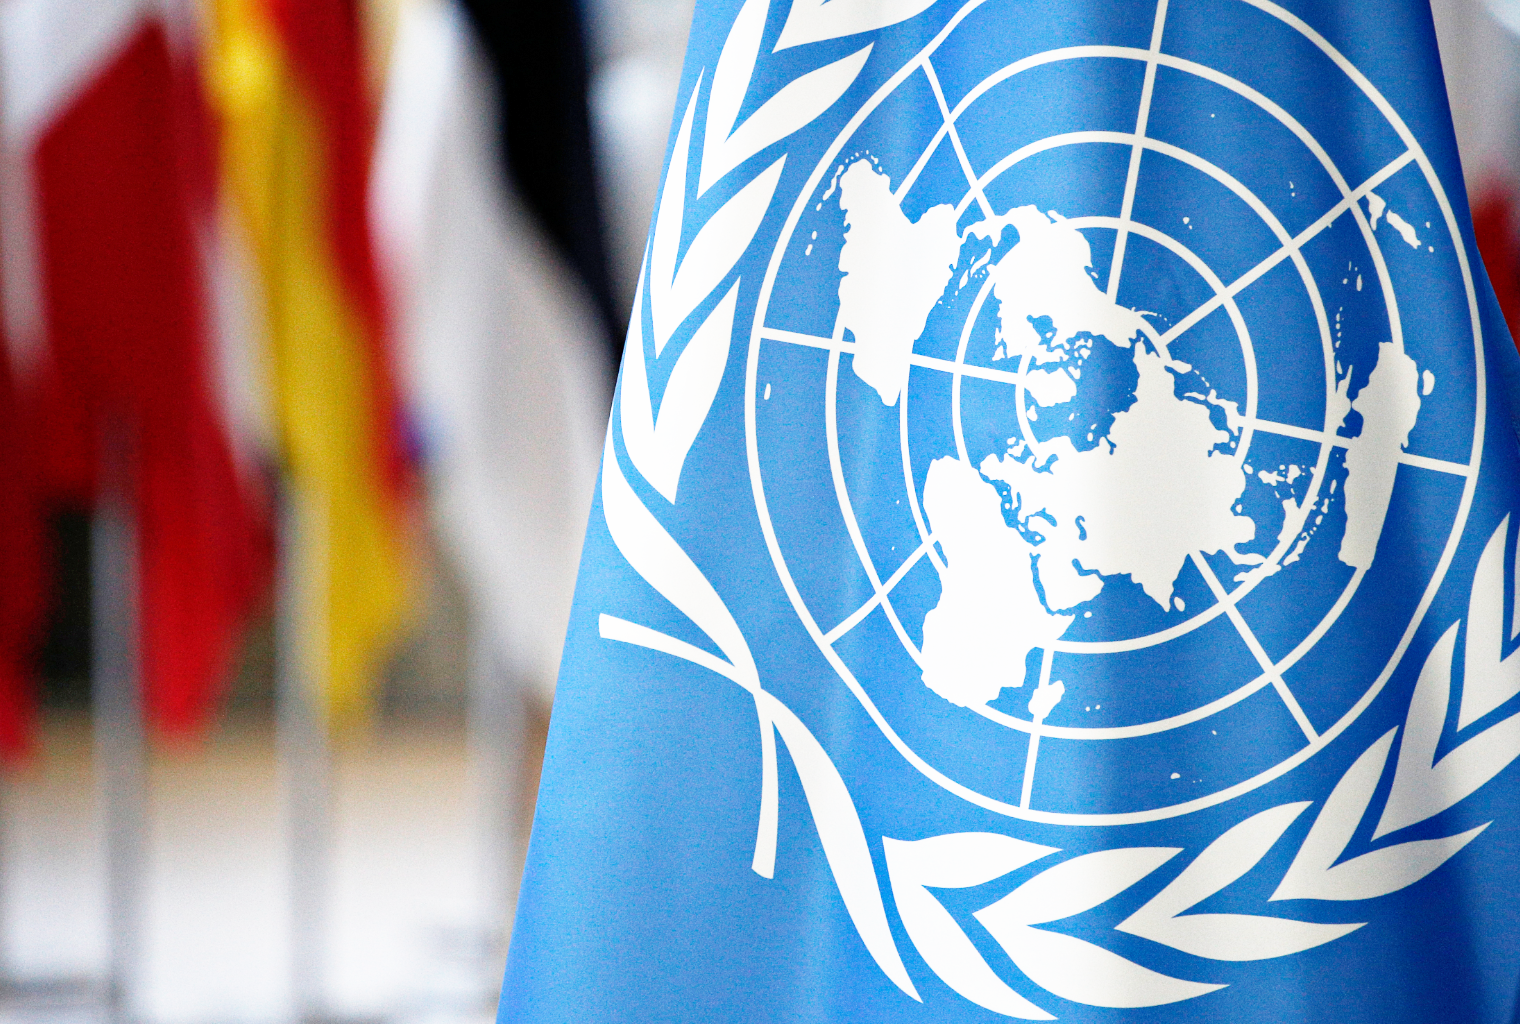  La Agencia de las Naciones Unidas Unicef ​​lanza el Fondo de Criptomonedas 